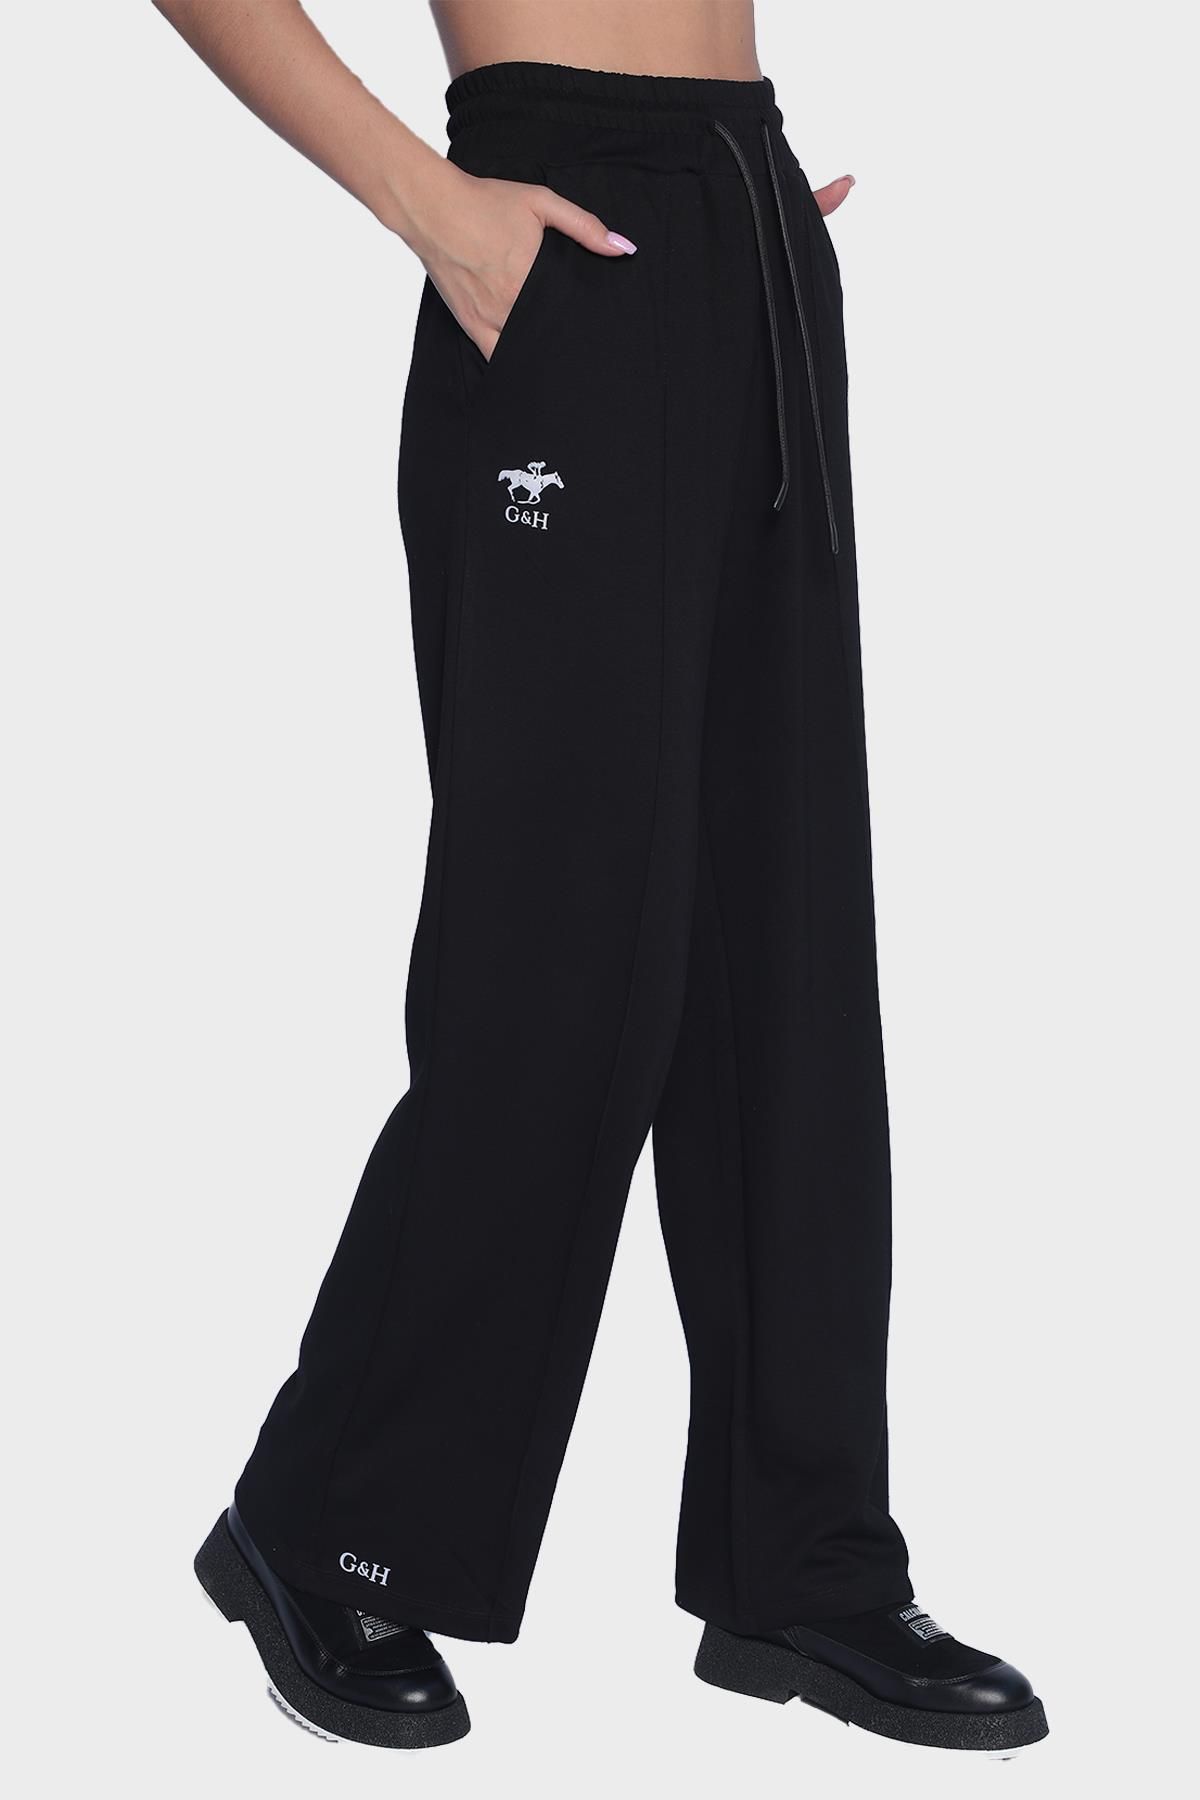 Женские спортивные штаны с широким карманом на эластичной талии - Черный